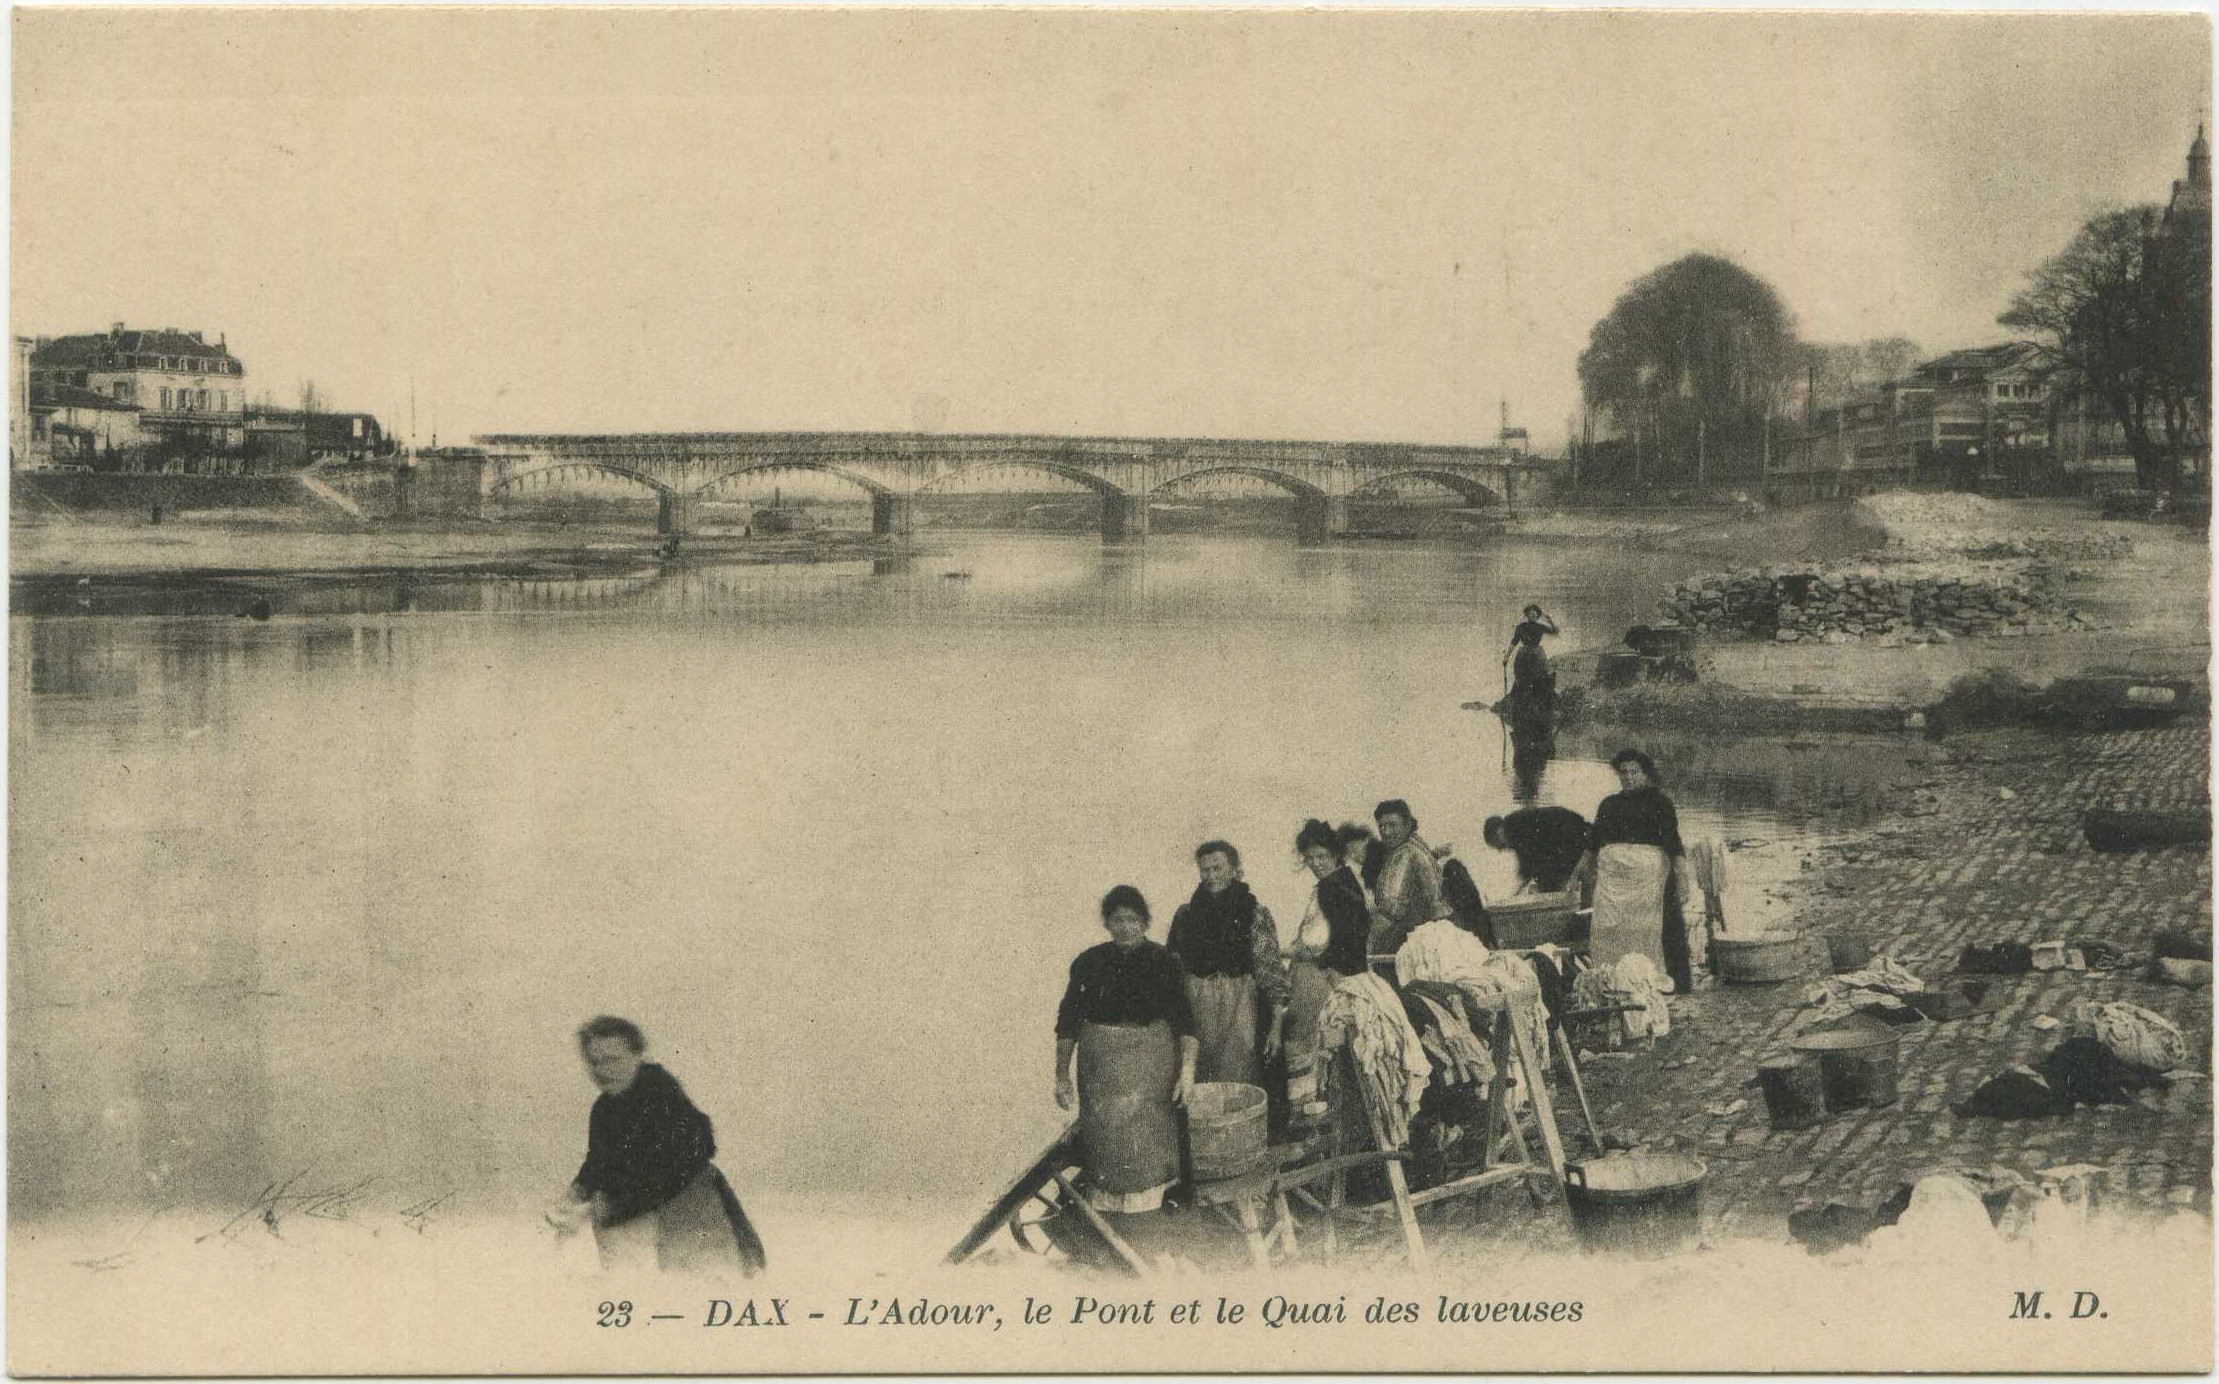 Dax - L'Adour, le Pont et le Quai des laveuses